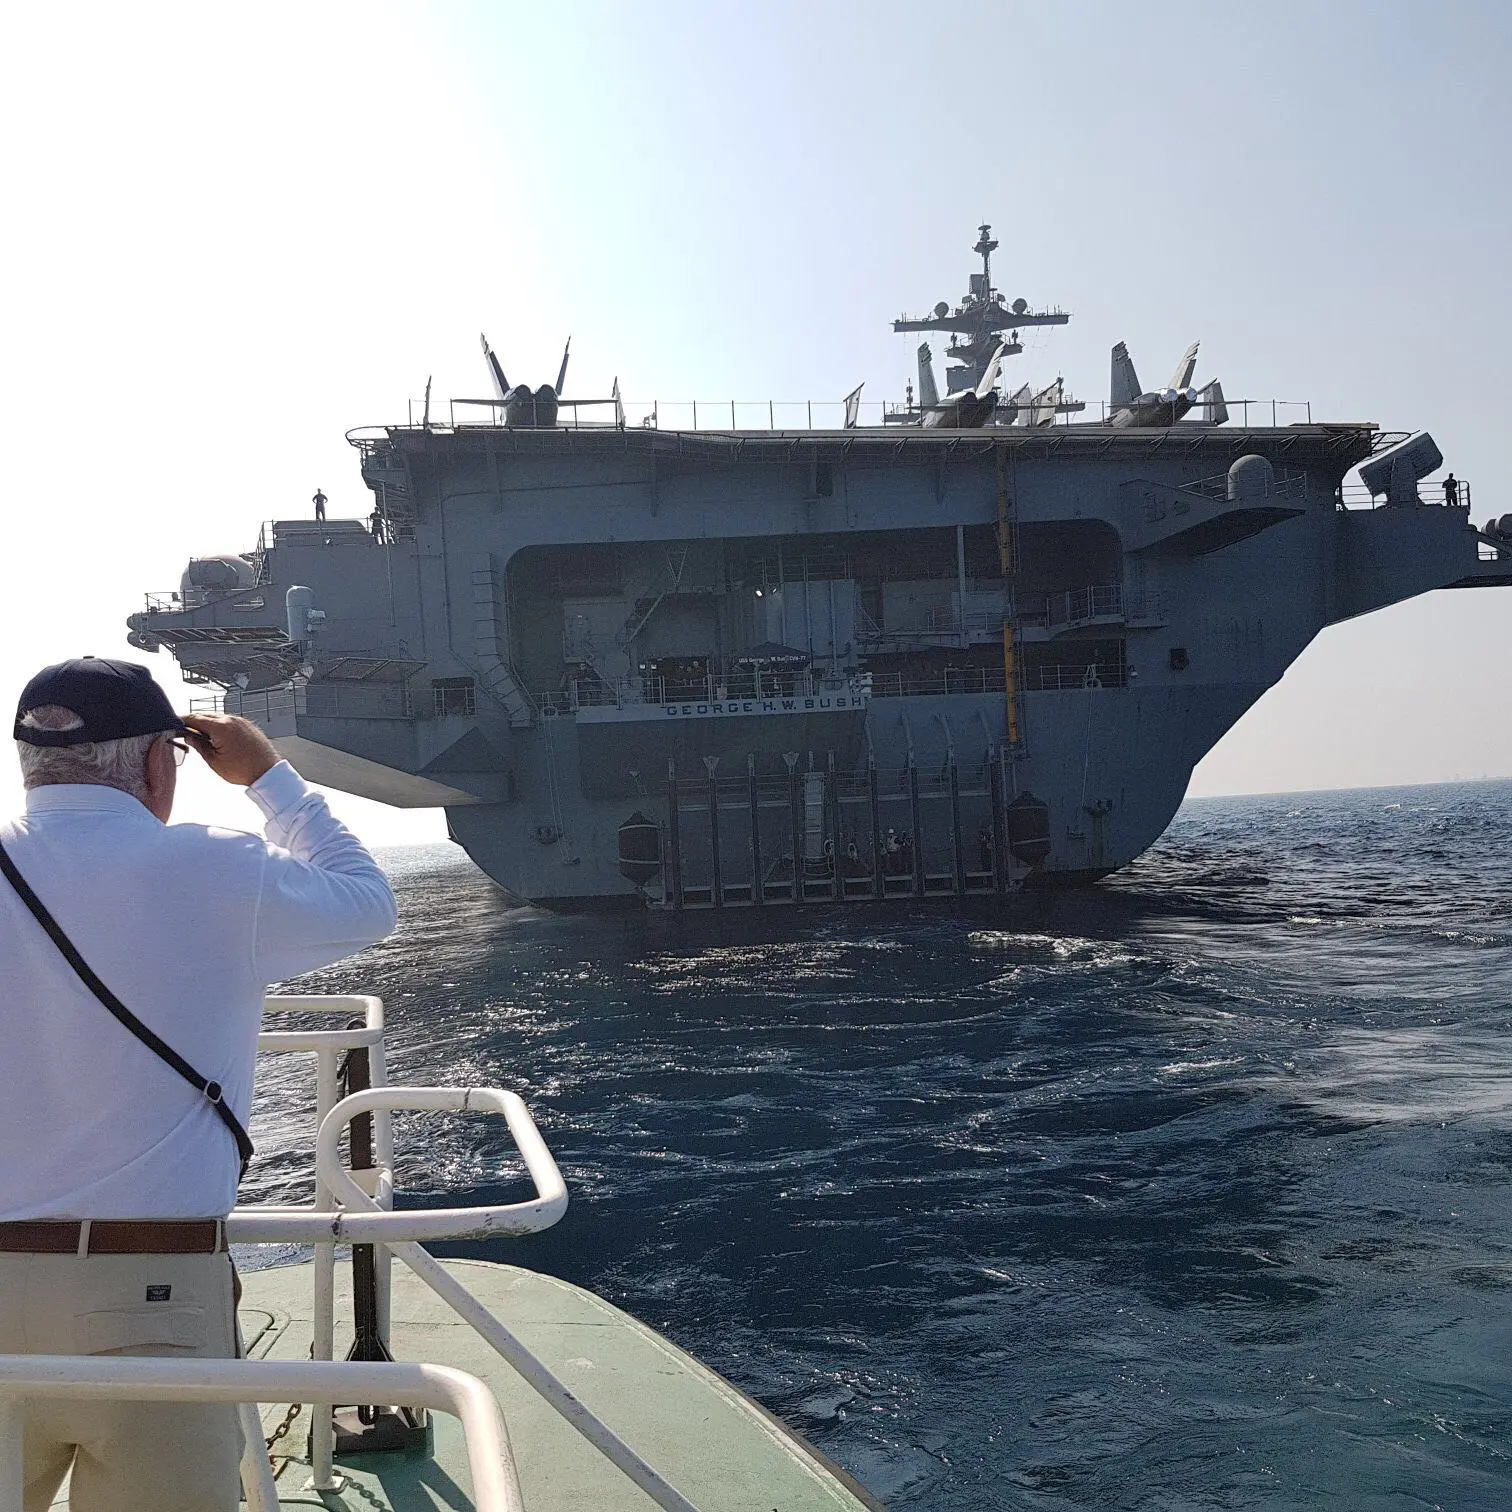 נושאת המטוסים ג'ורג' בוש עוגנת בנמל חיפה, 1 ביולי 2017